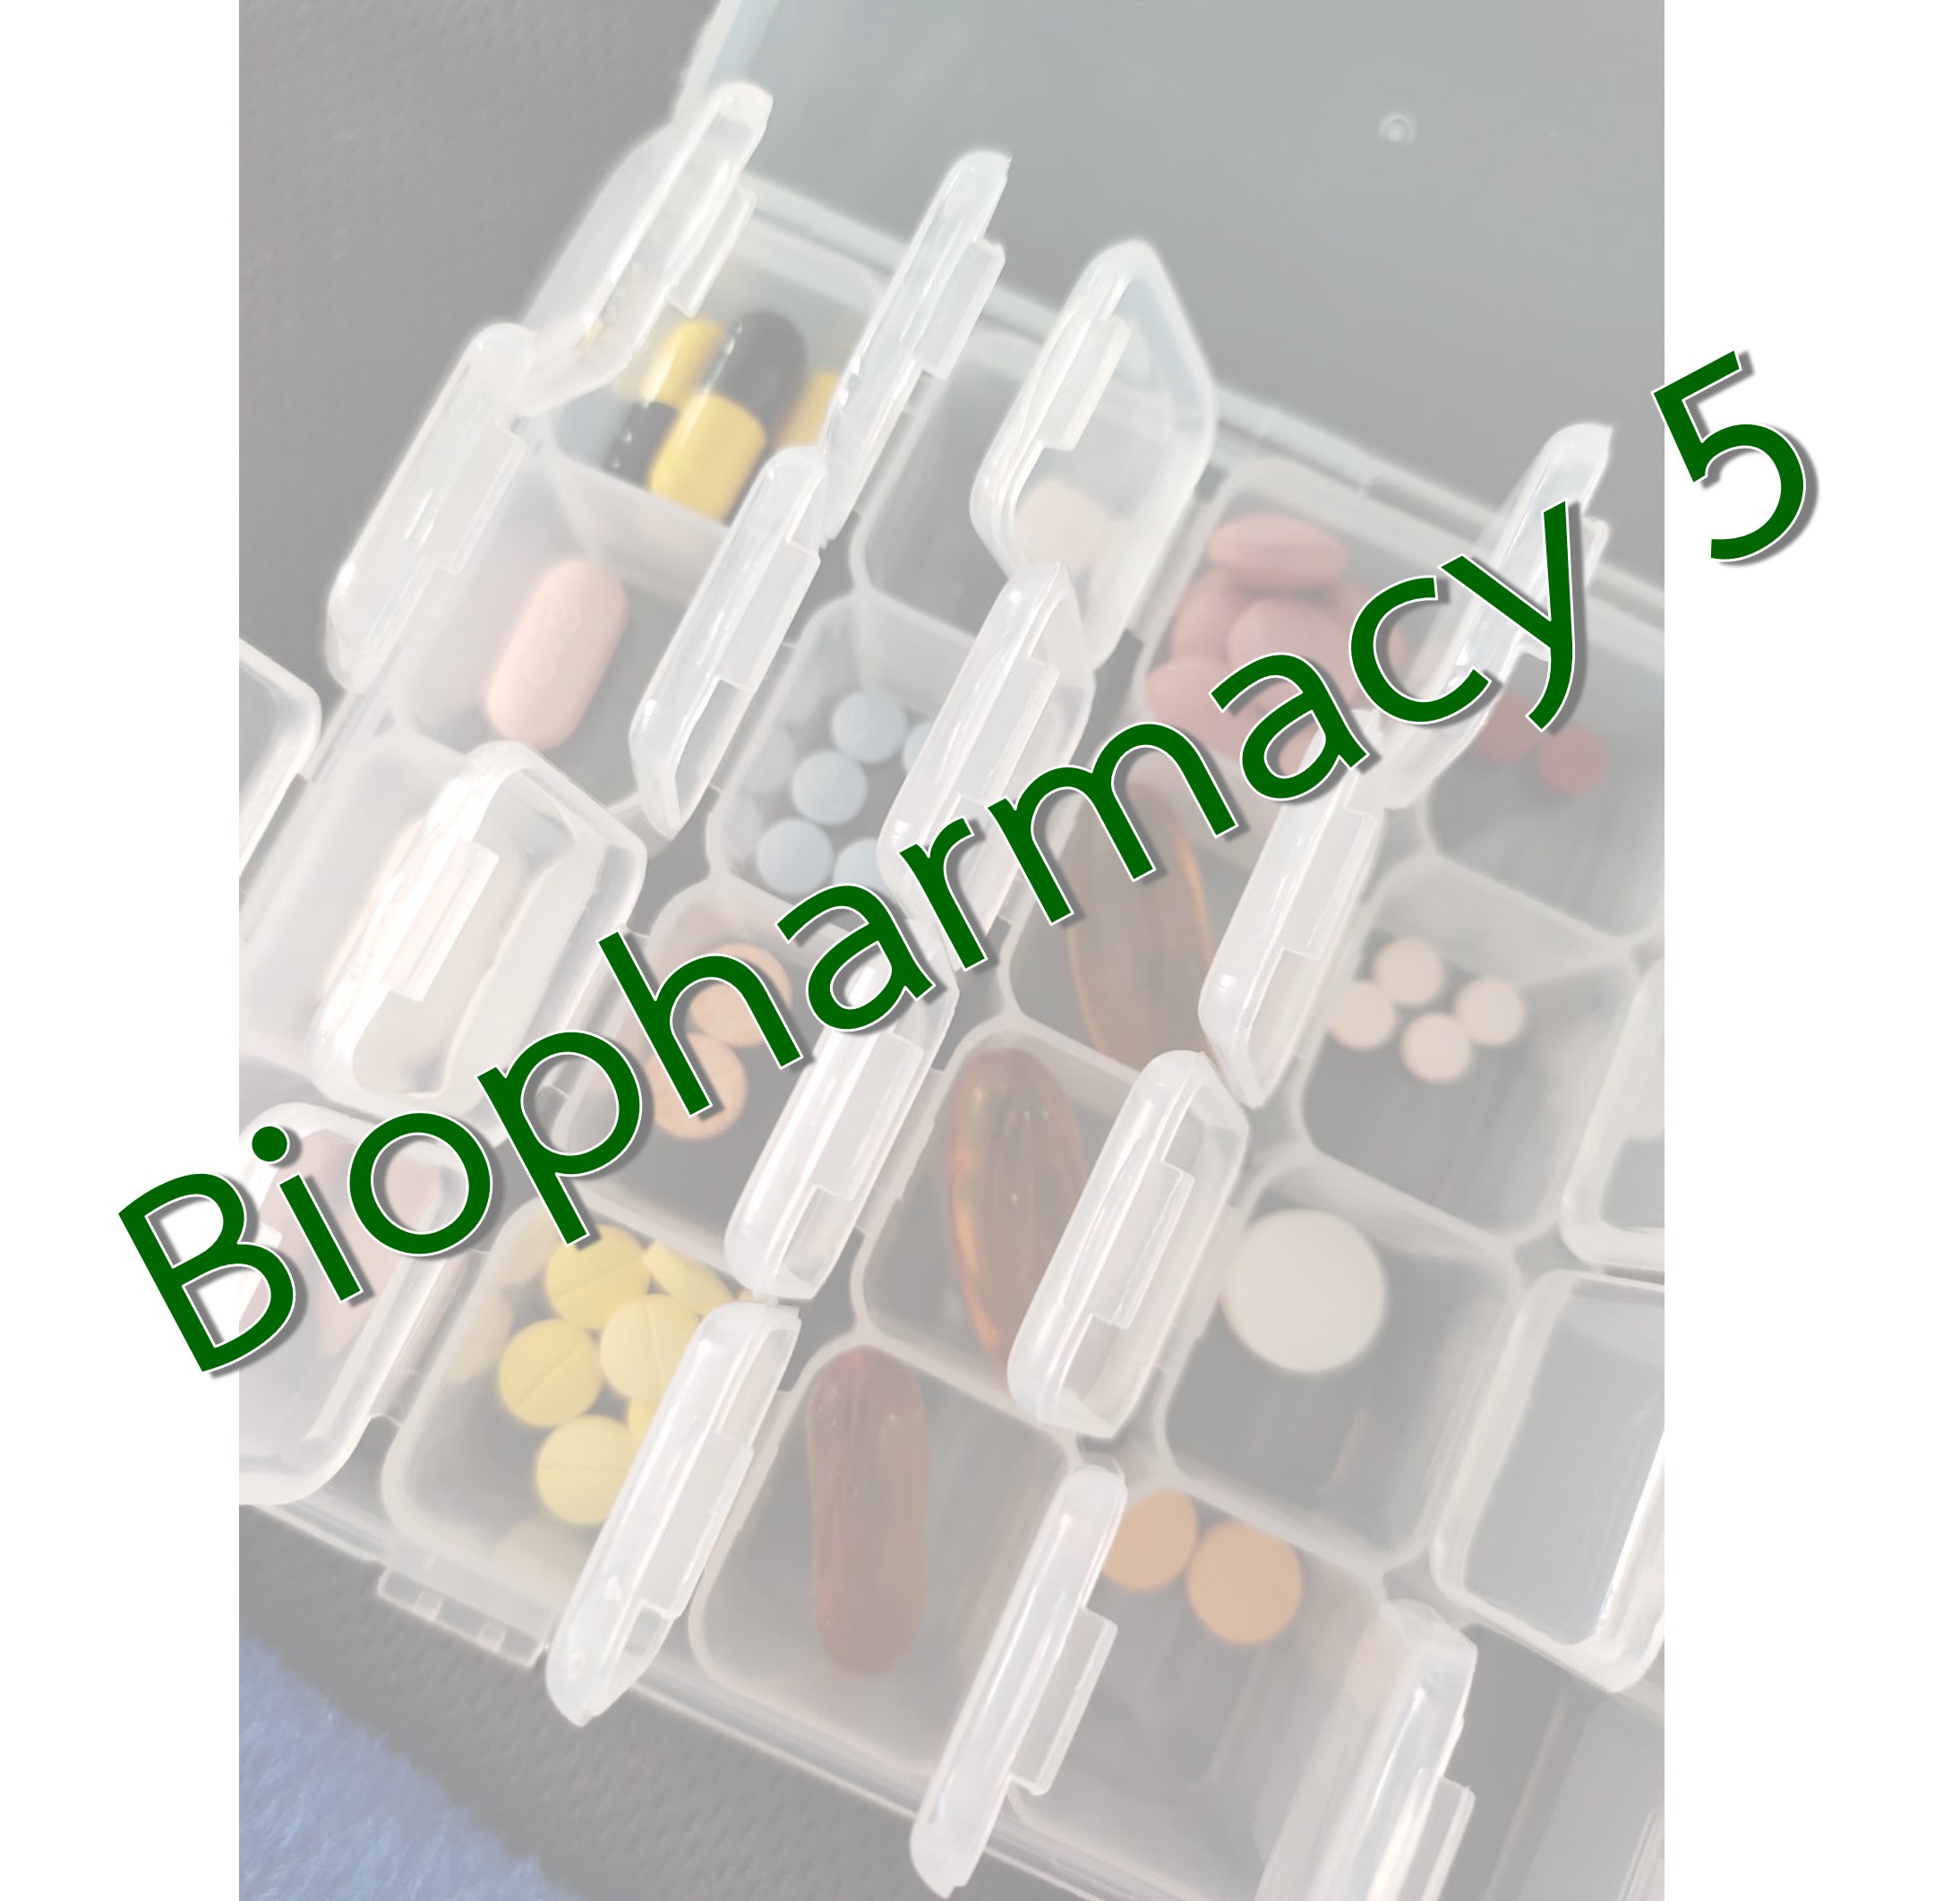 PBP 373 Biopharmacy 5 / 2566